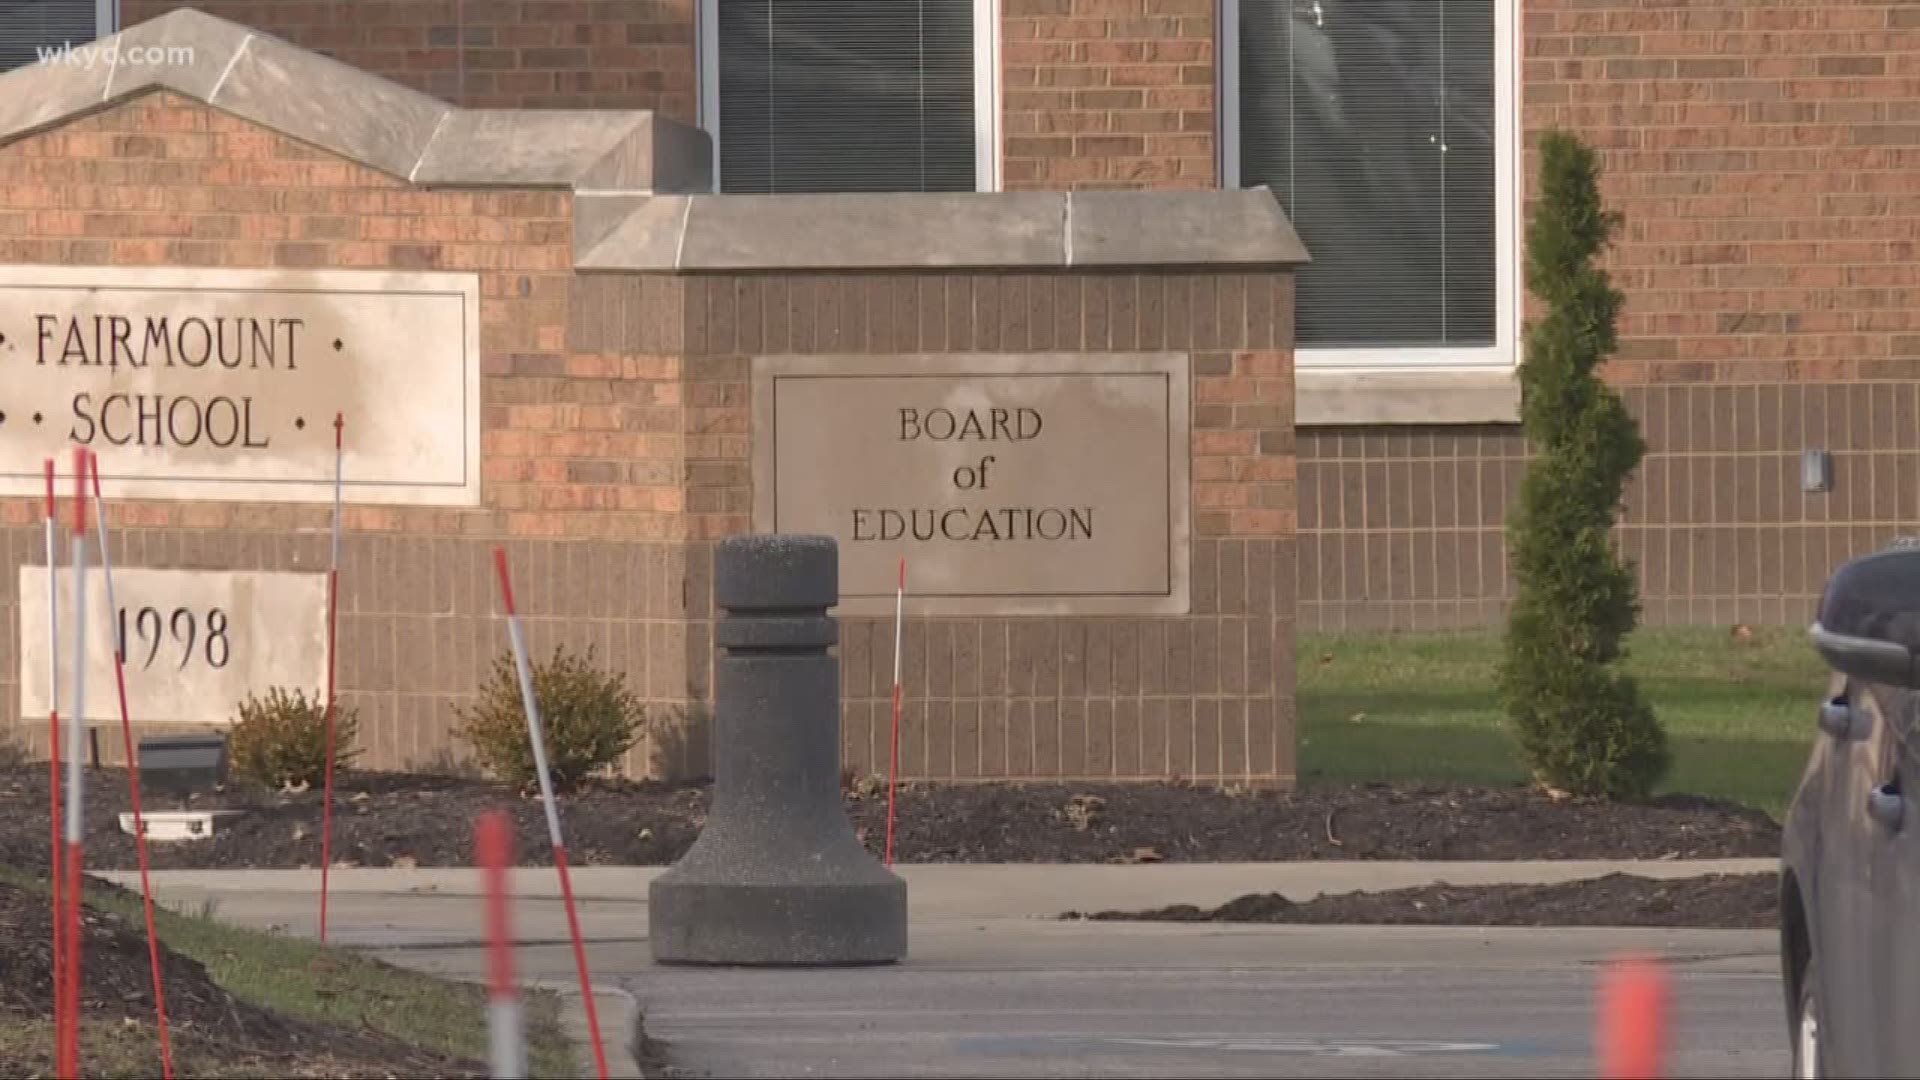 lawsuit between two school districts has been dismissed